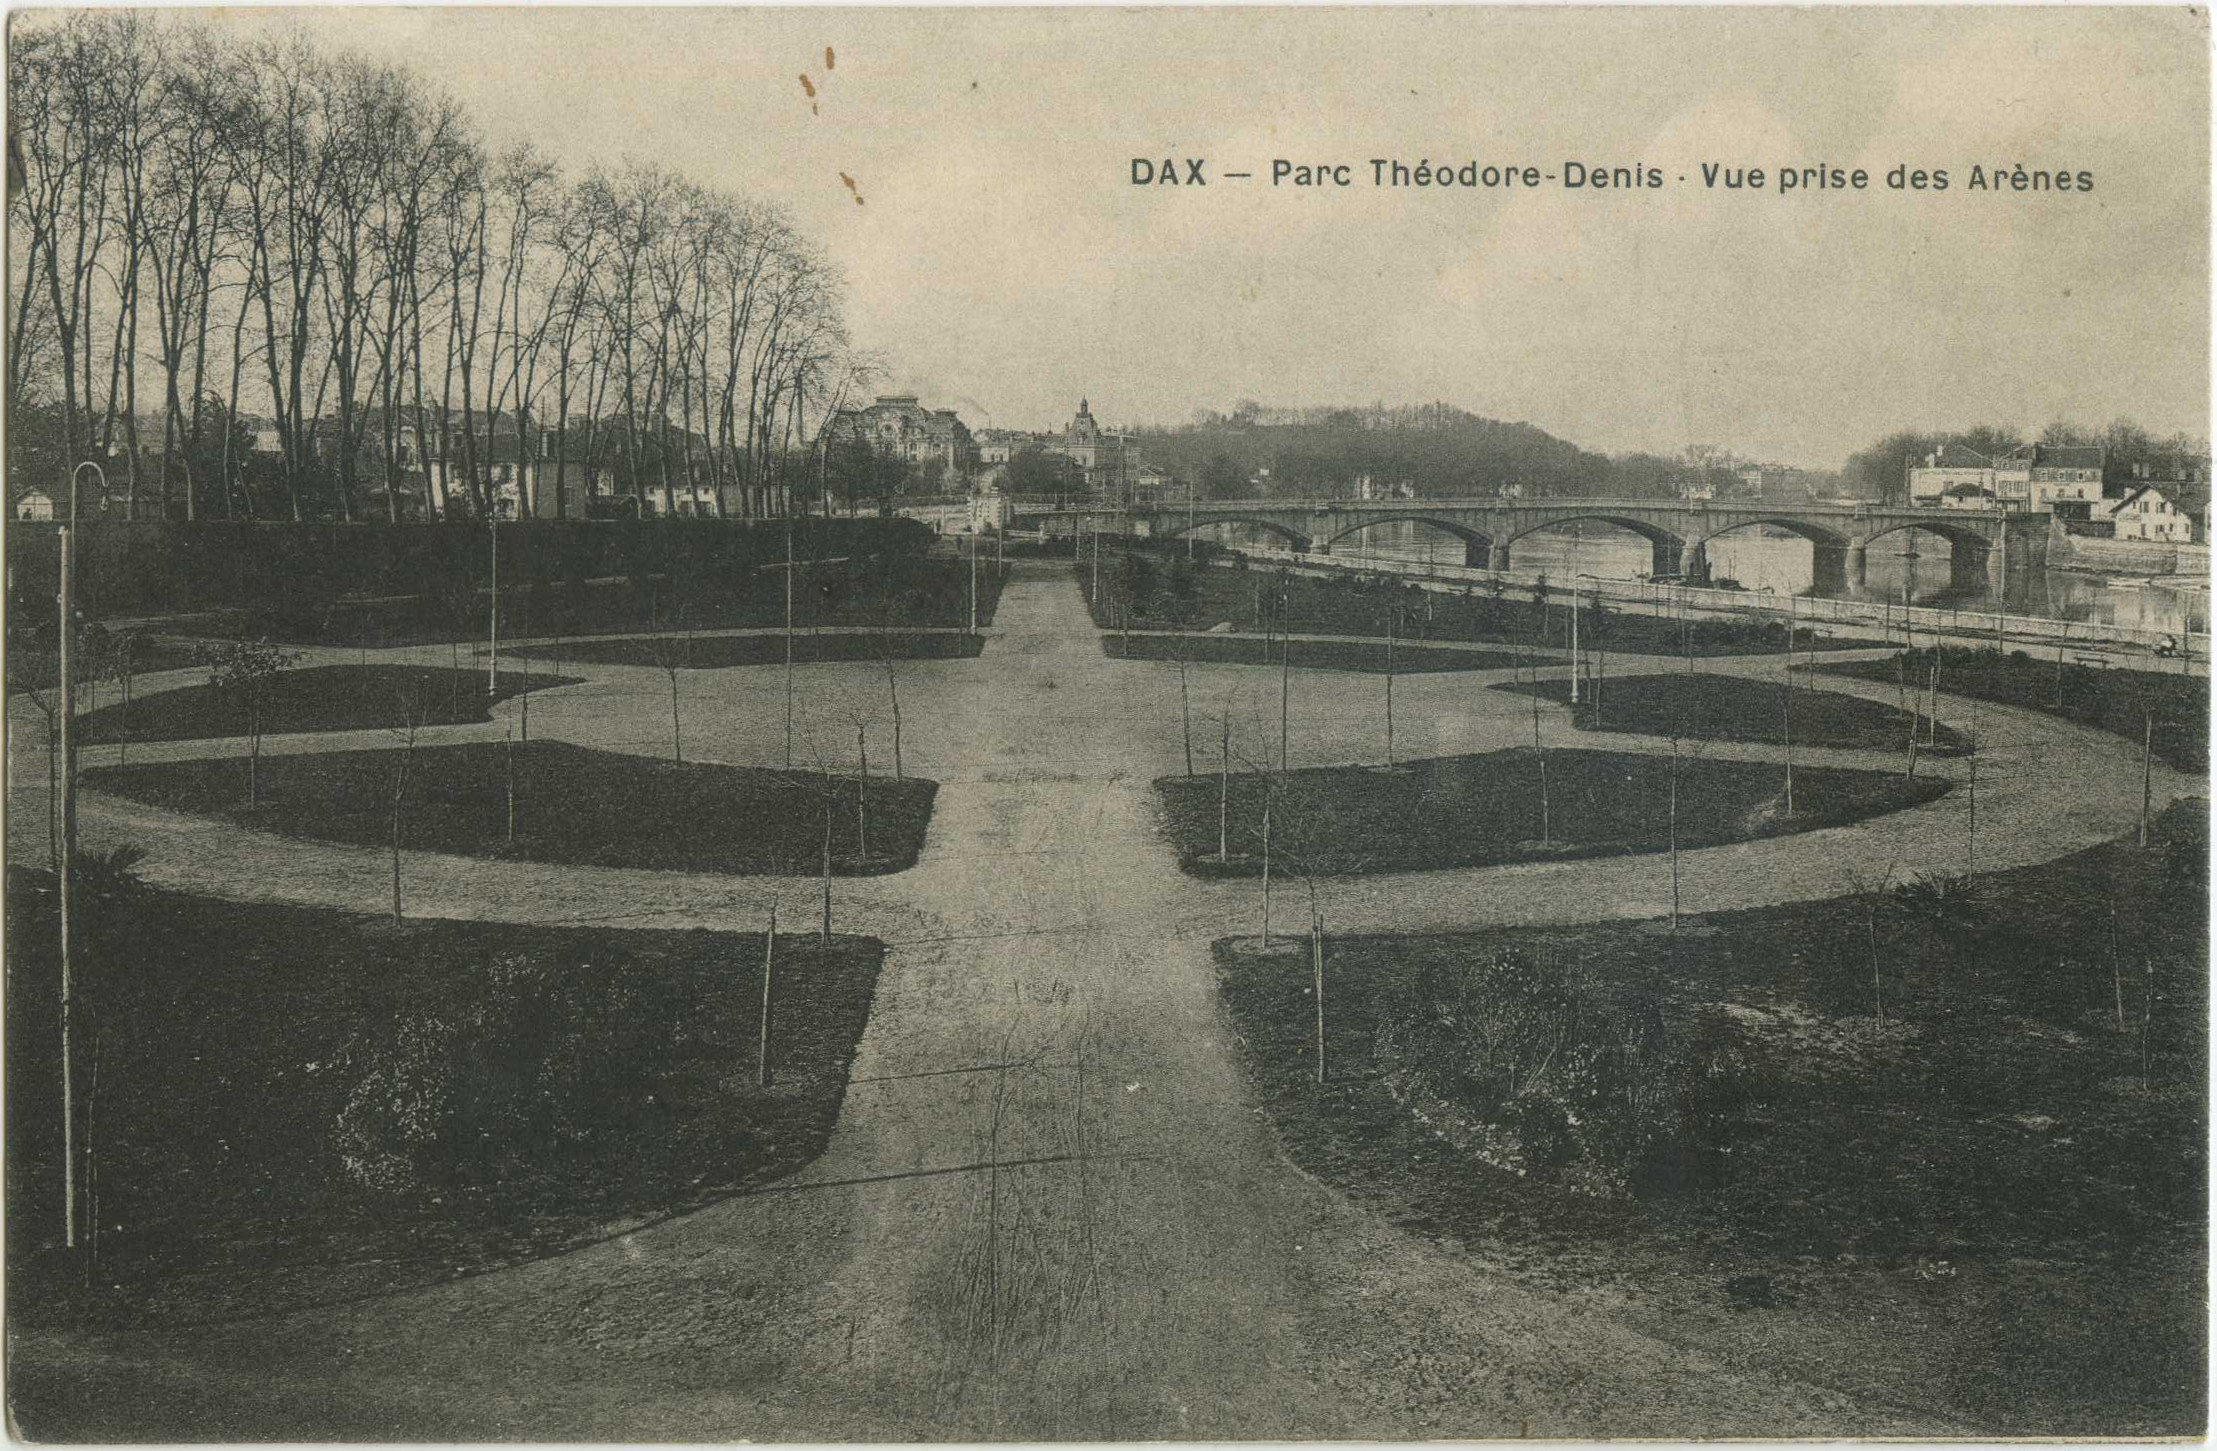 Dax - Parc Théodore-Denis - Vue prise des Arènes